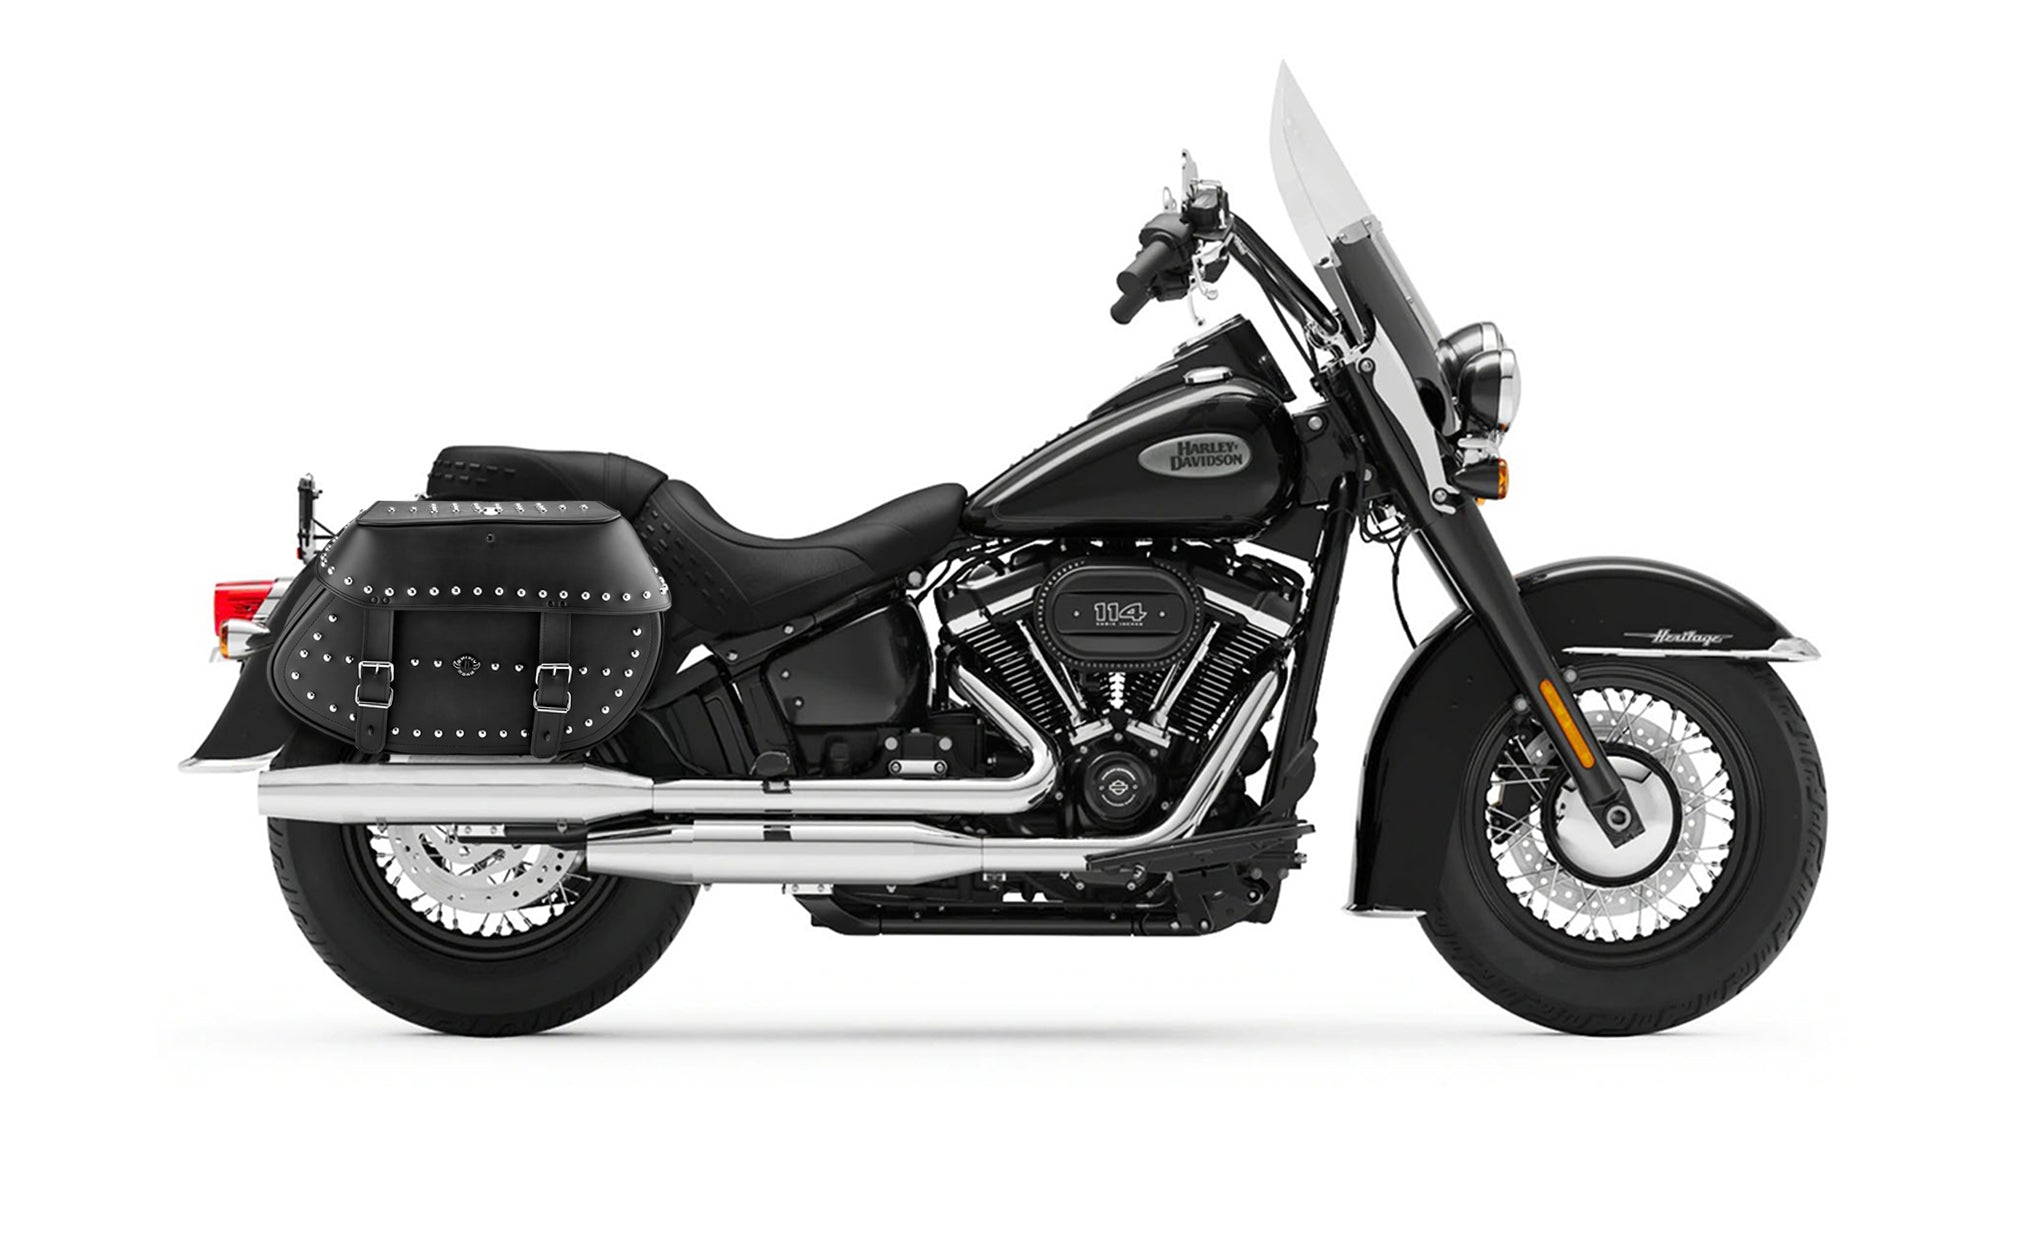 Viking Legacy Extra Large Studded Leather Motorcycle Saddlebags For Harley Softail Heritage Flst I C Ci on Bike Photo @expand